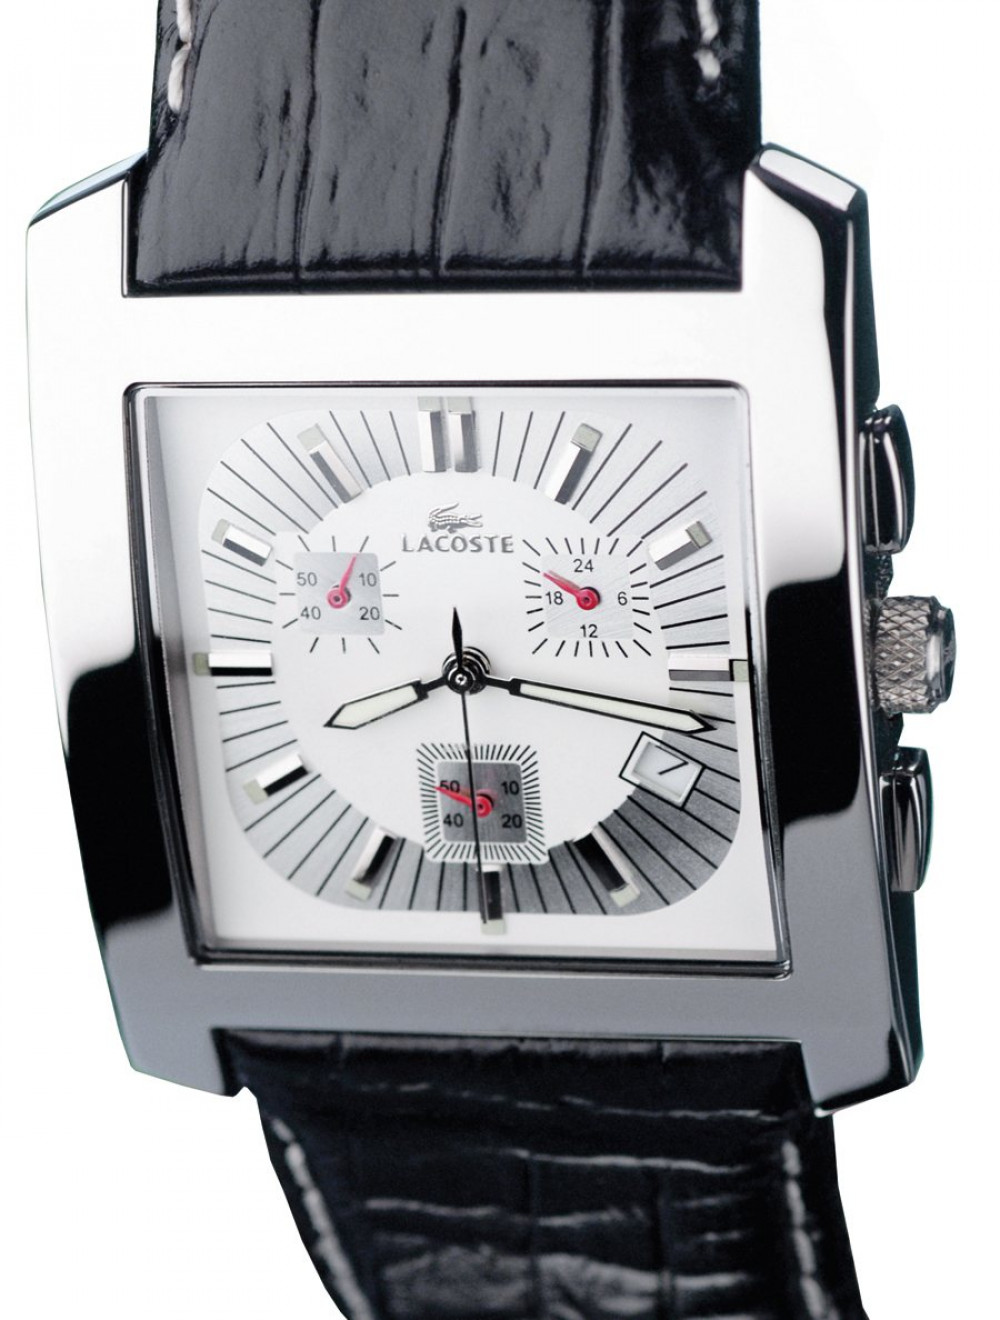 Zegarek firmy Lacoste, model Lacoste Club